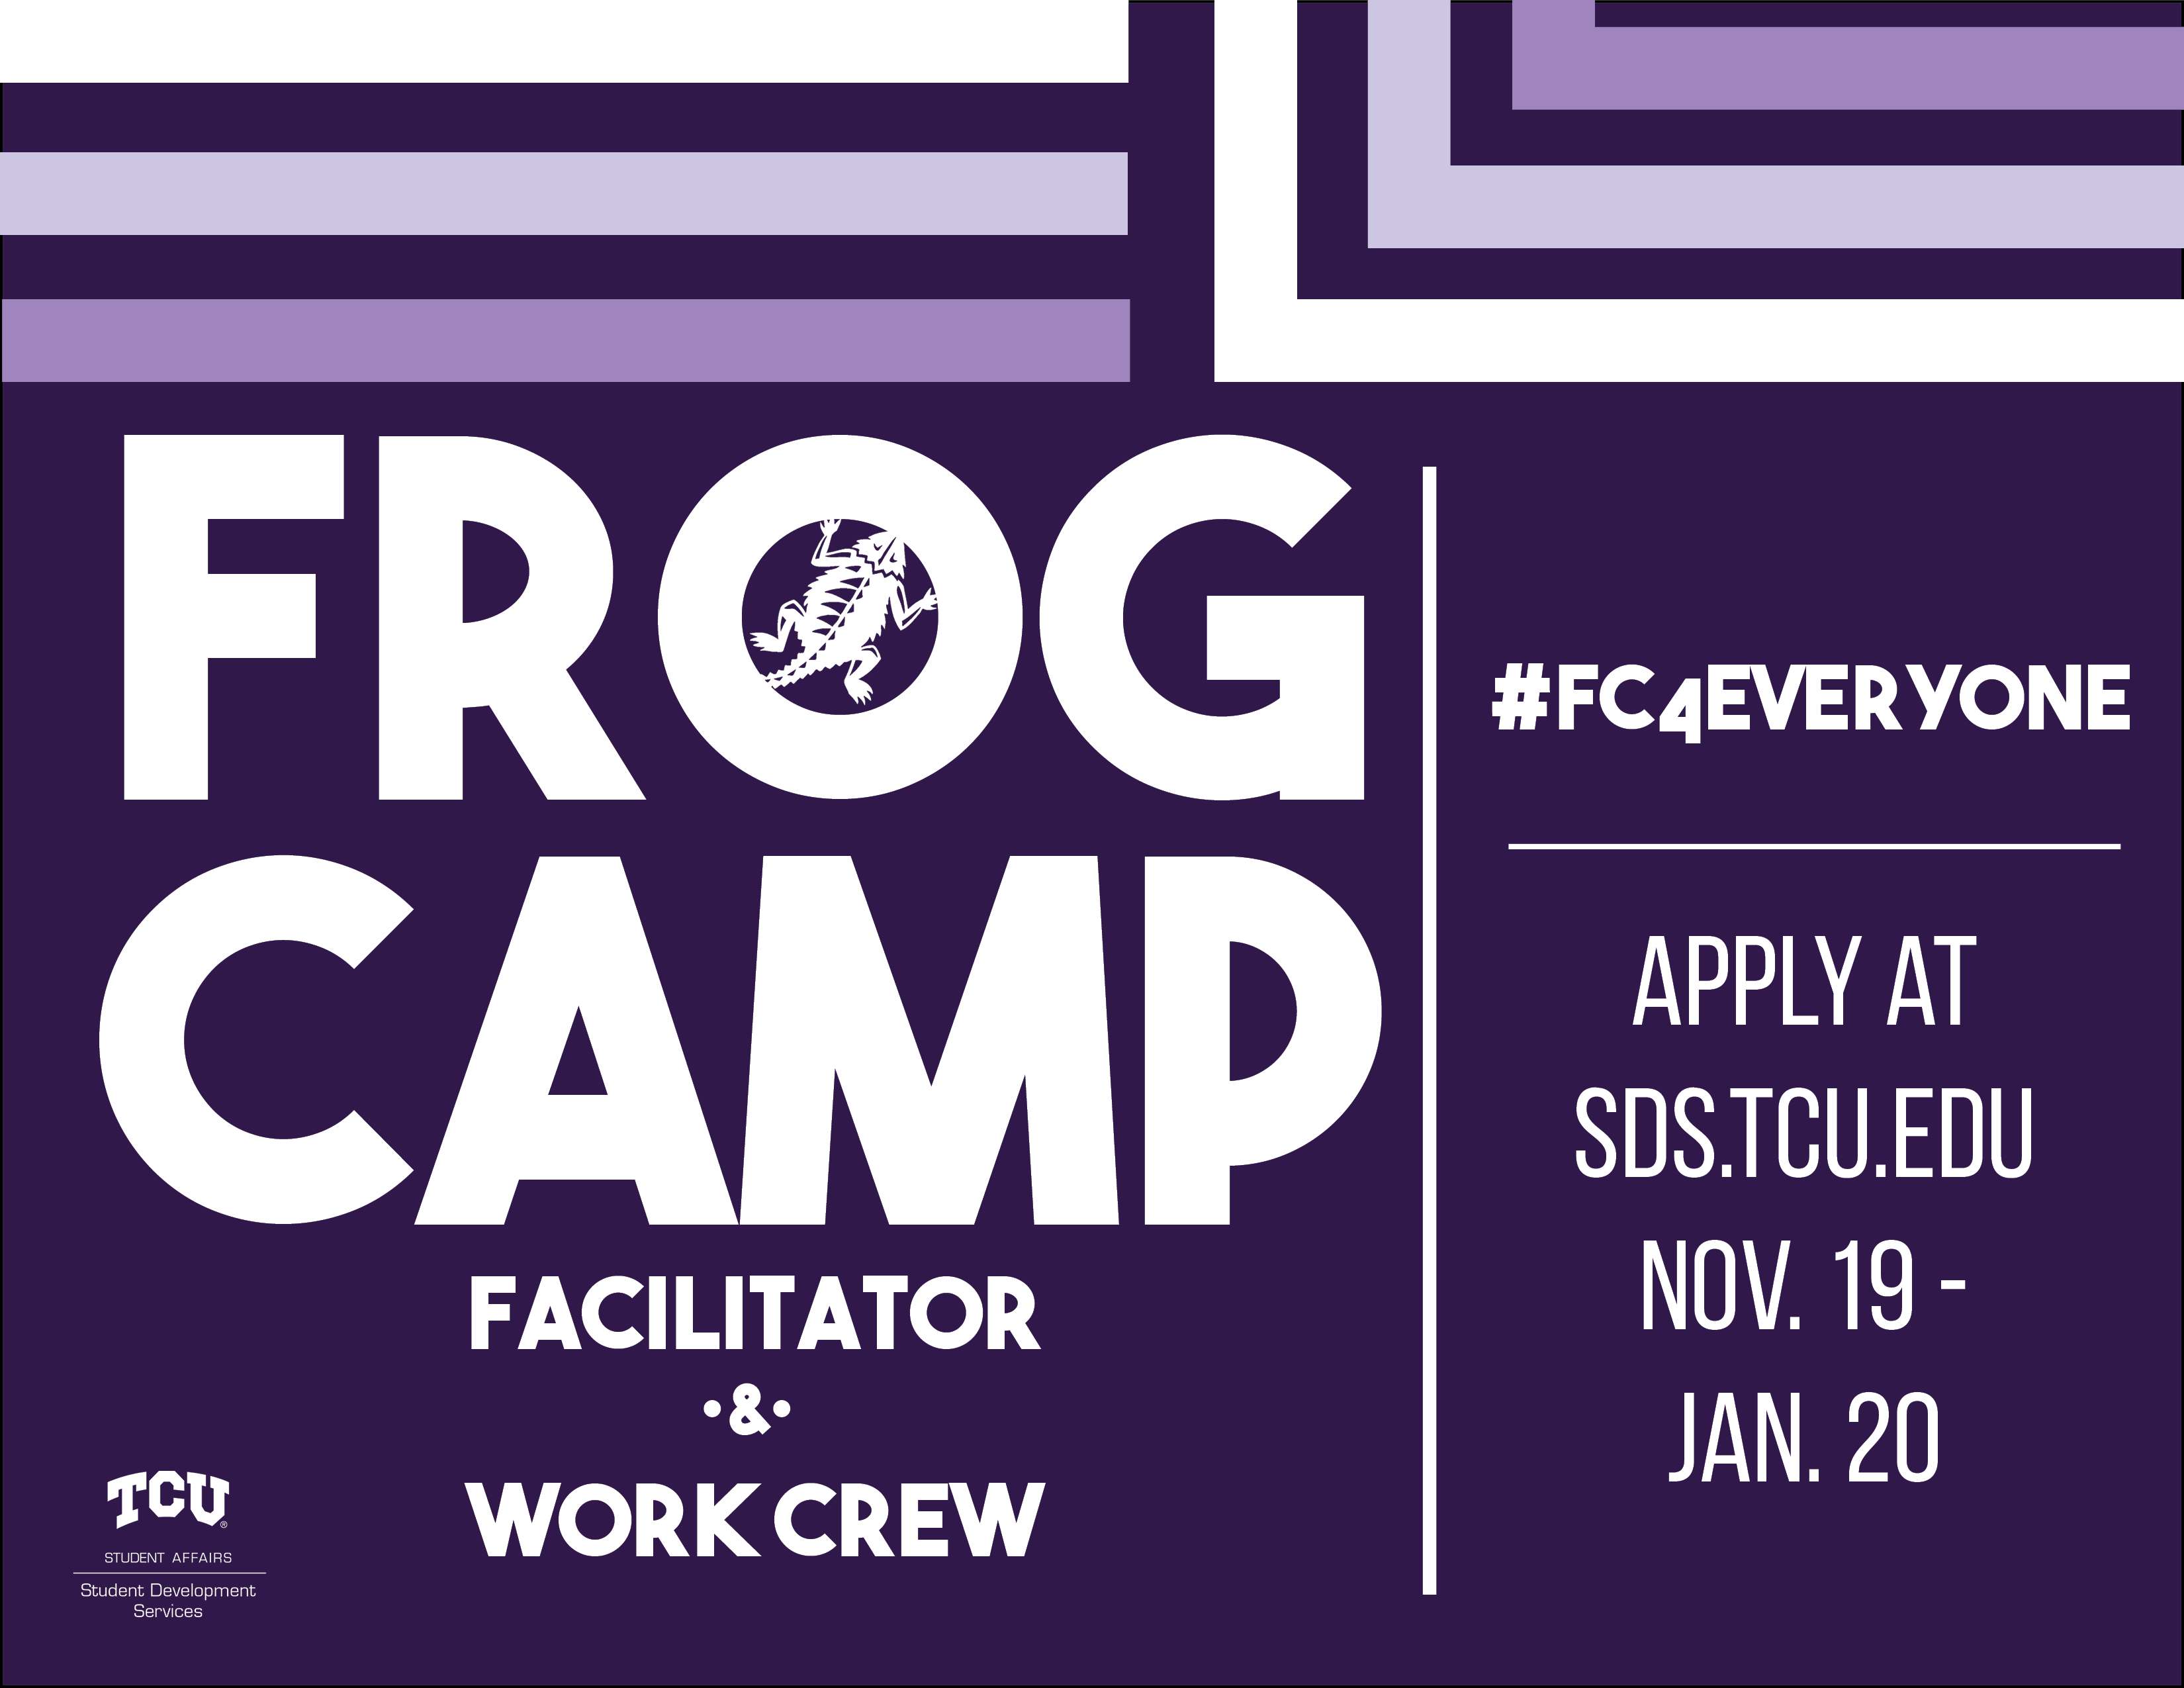 Frog_Camp_Facilitator_2019